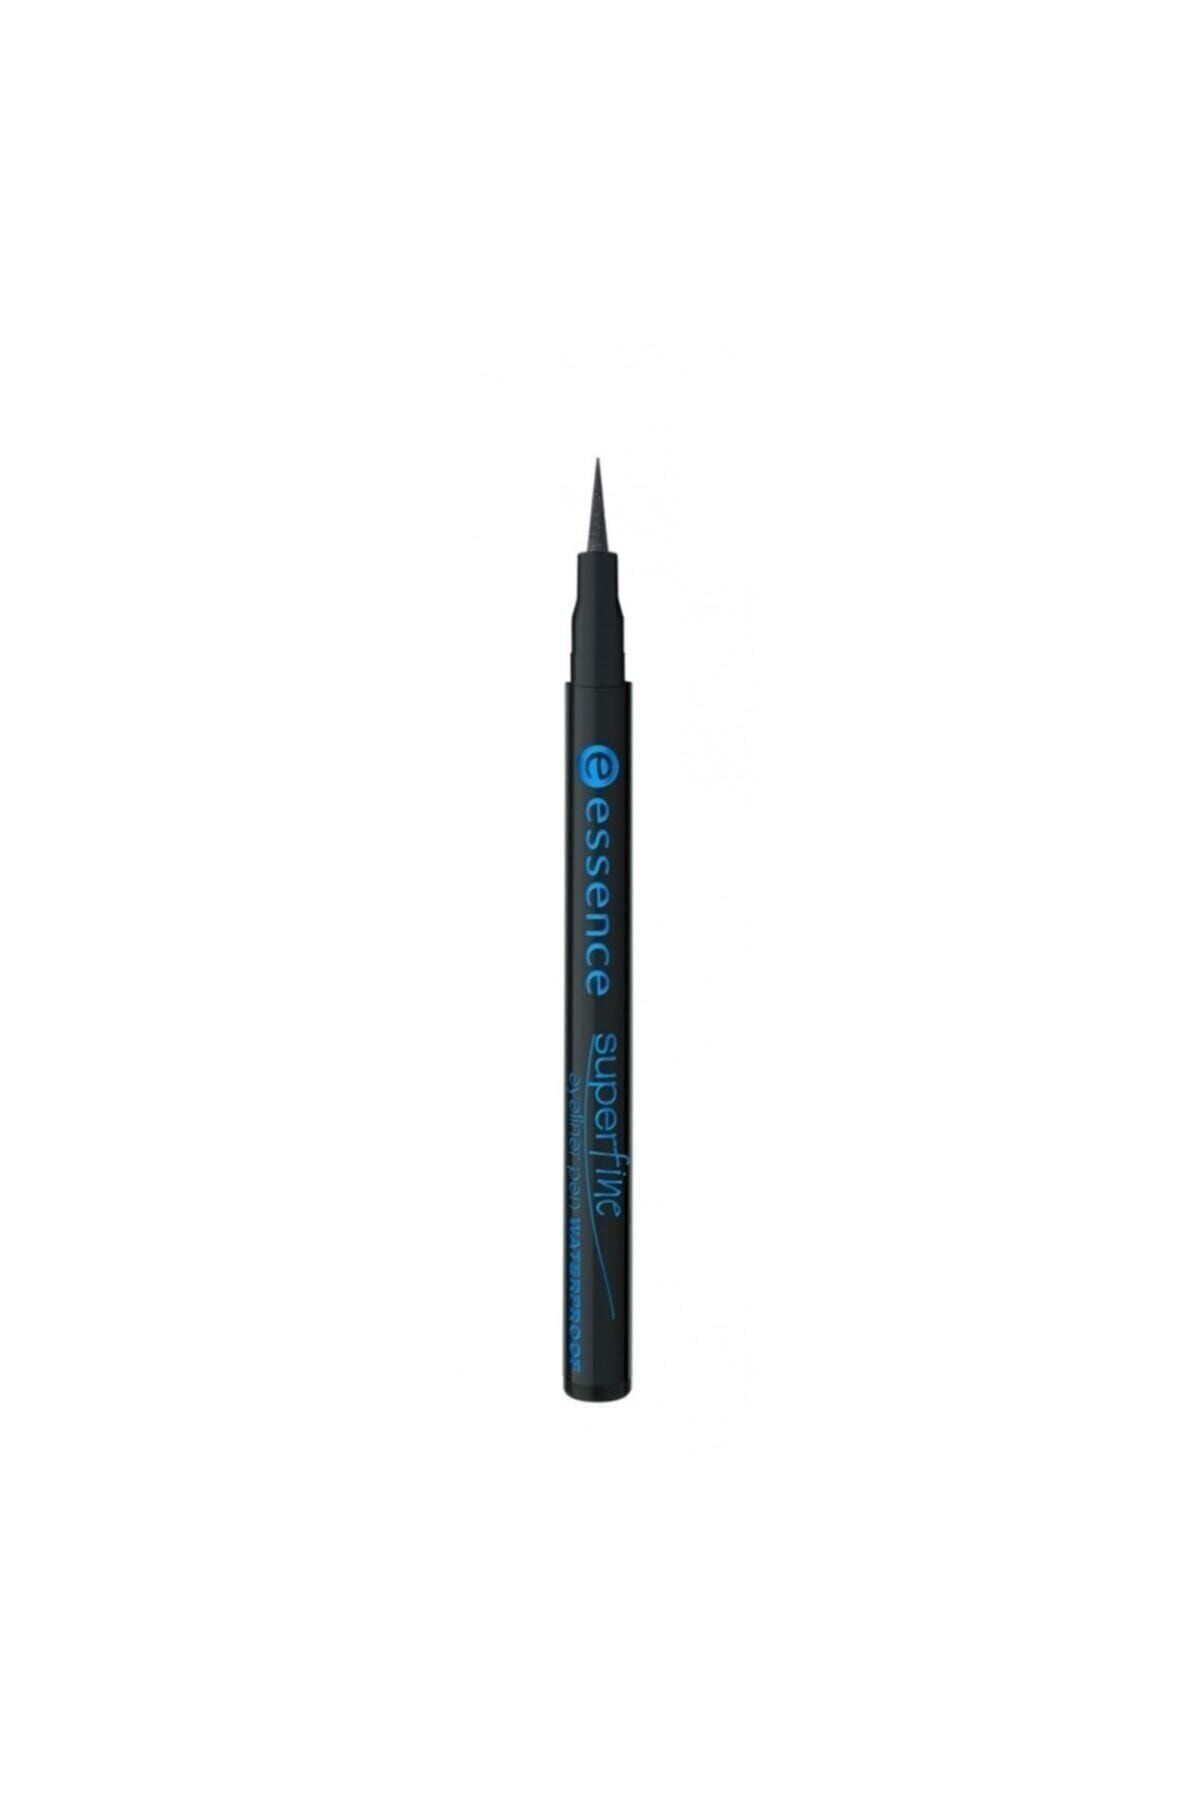 Essence Suya Dayanıklı Eyeliner Siyah - Superfine Waterproof Eyeliner Pen 4250947565889